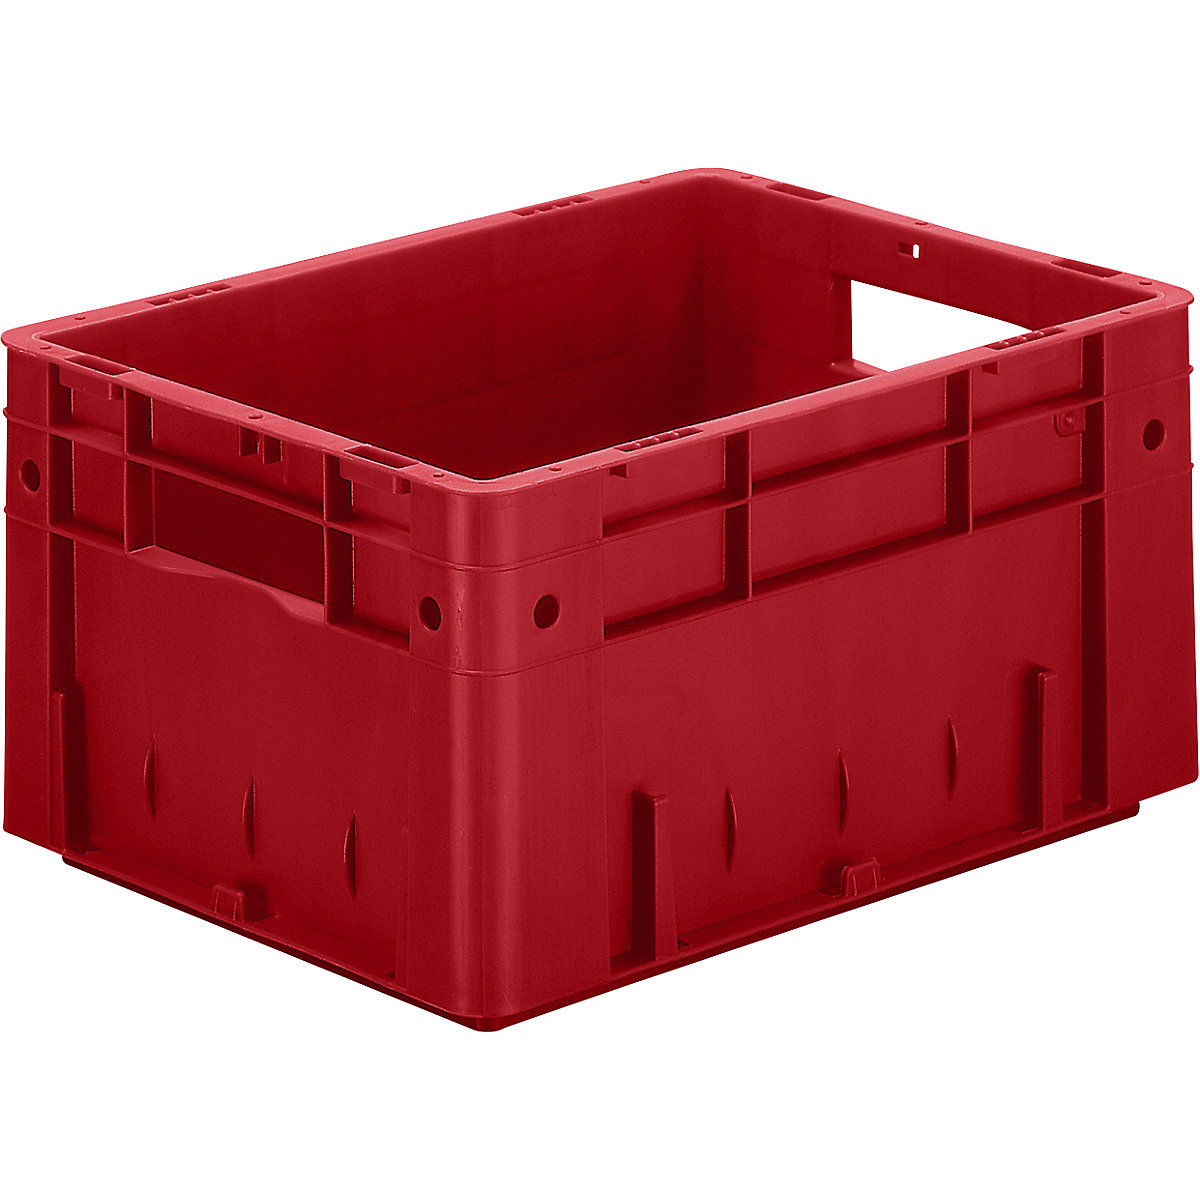 Schwerlast-Euro-Behälter, Polypropylen, Volumen 17,5 l, LxBxH 400 x 300 x 210 mm, Wände geschlossen, Boden geschlossen, rot, VE 4 Stk-5